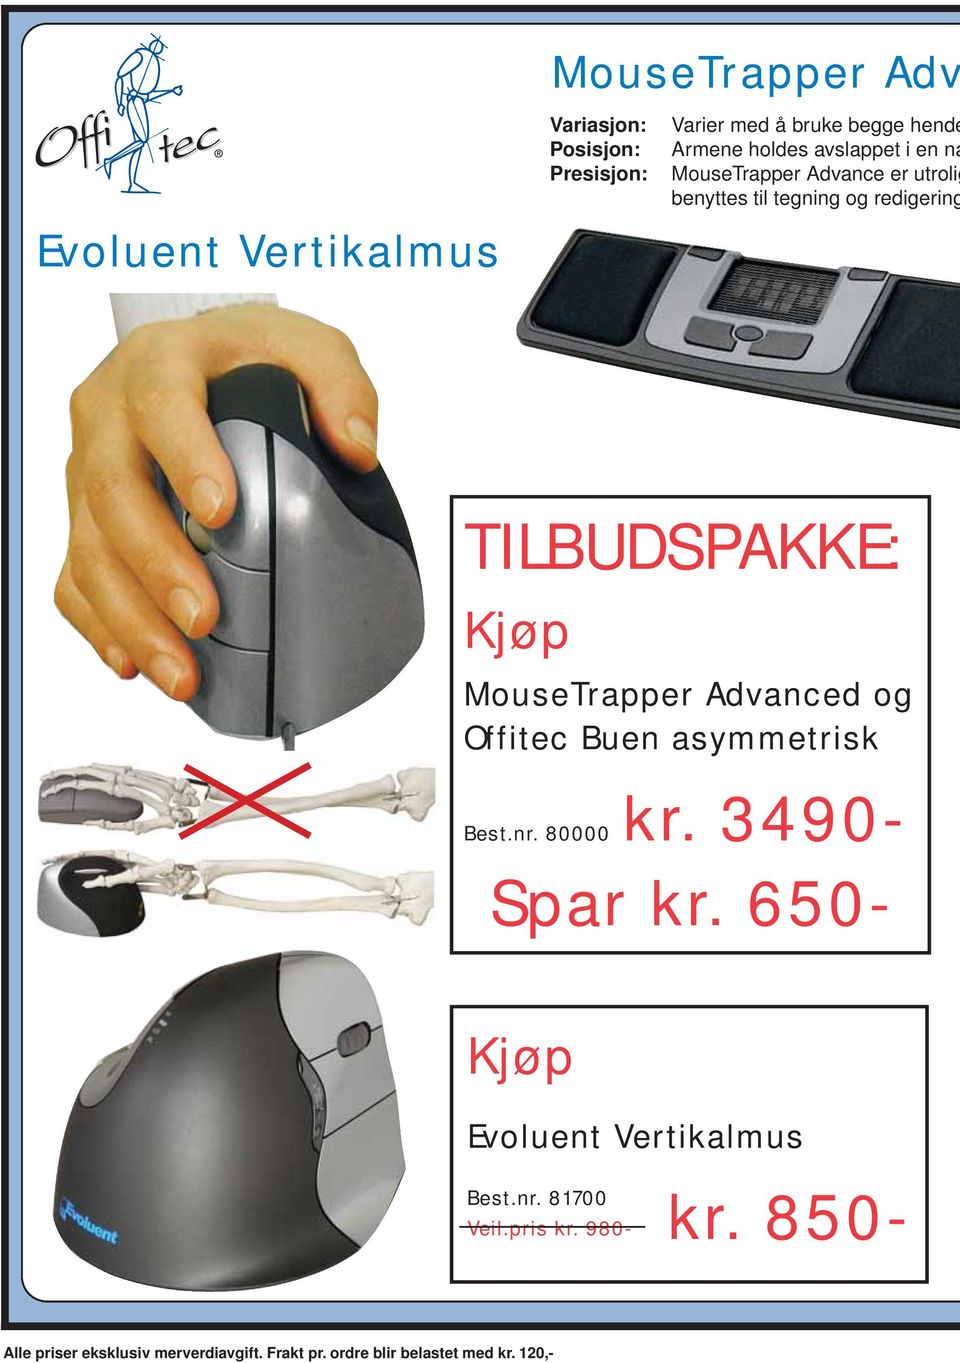 Kjøp MouseTrapper Advanced og Offitec Buen asymmetrisk 80000 kr. 3490- Spar kr.